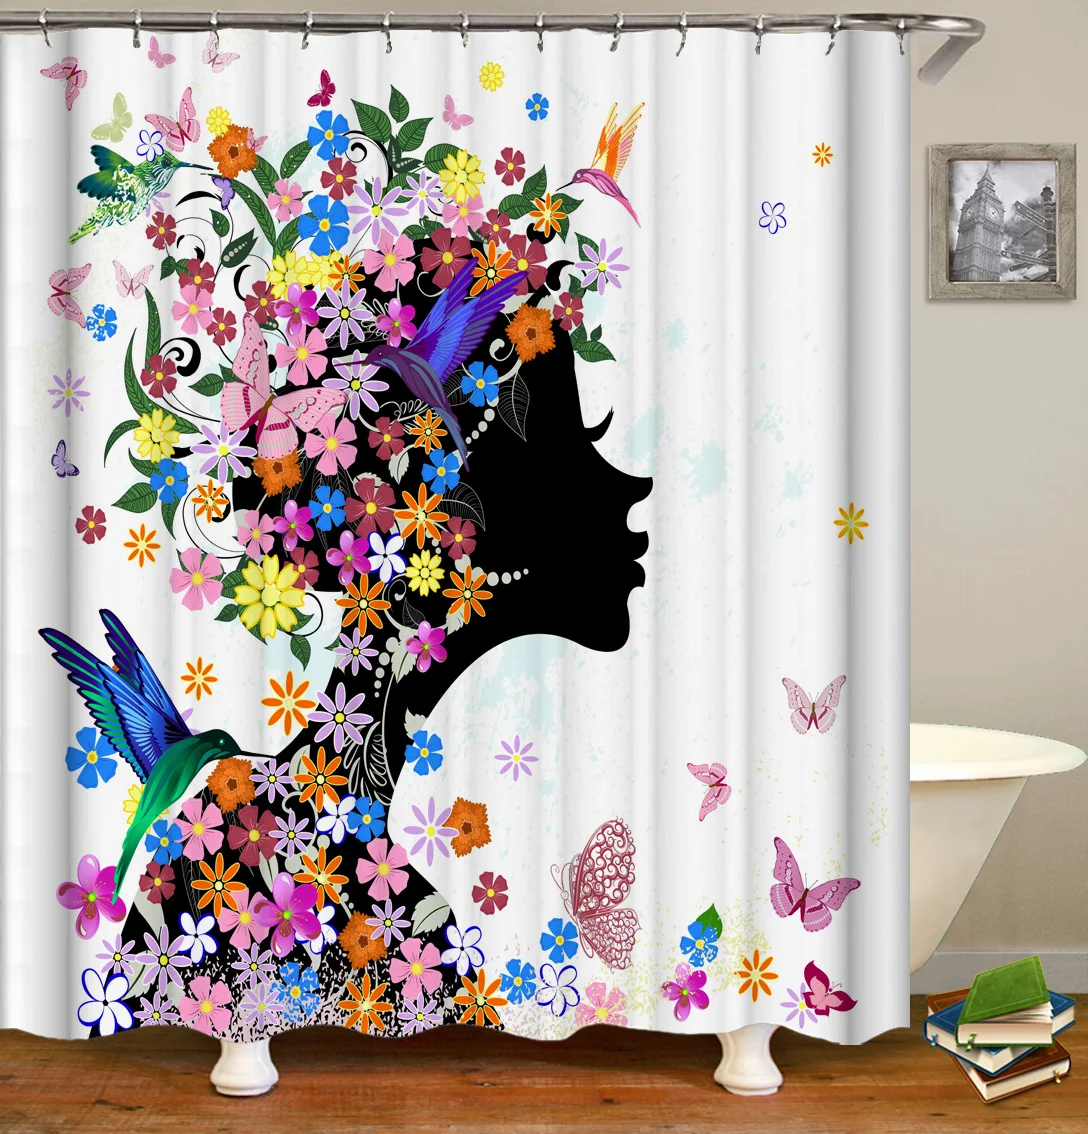 

3D Waterproof Mildew Proof PEVA Bathroom Bath Curtain Shower Curtains, Glorious Floral Print, Environmental Toilet Door Curtain